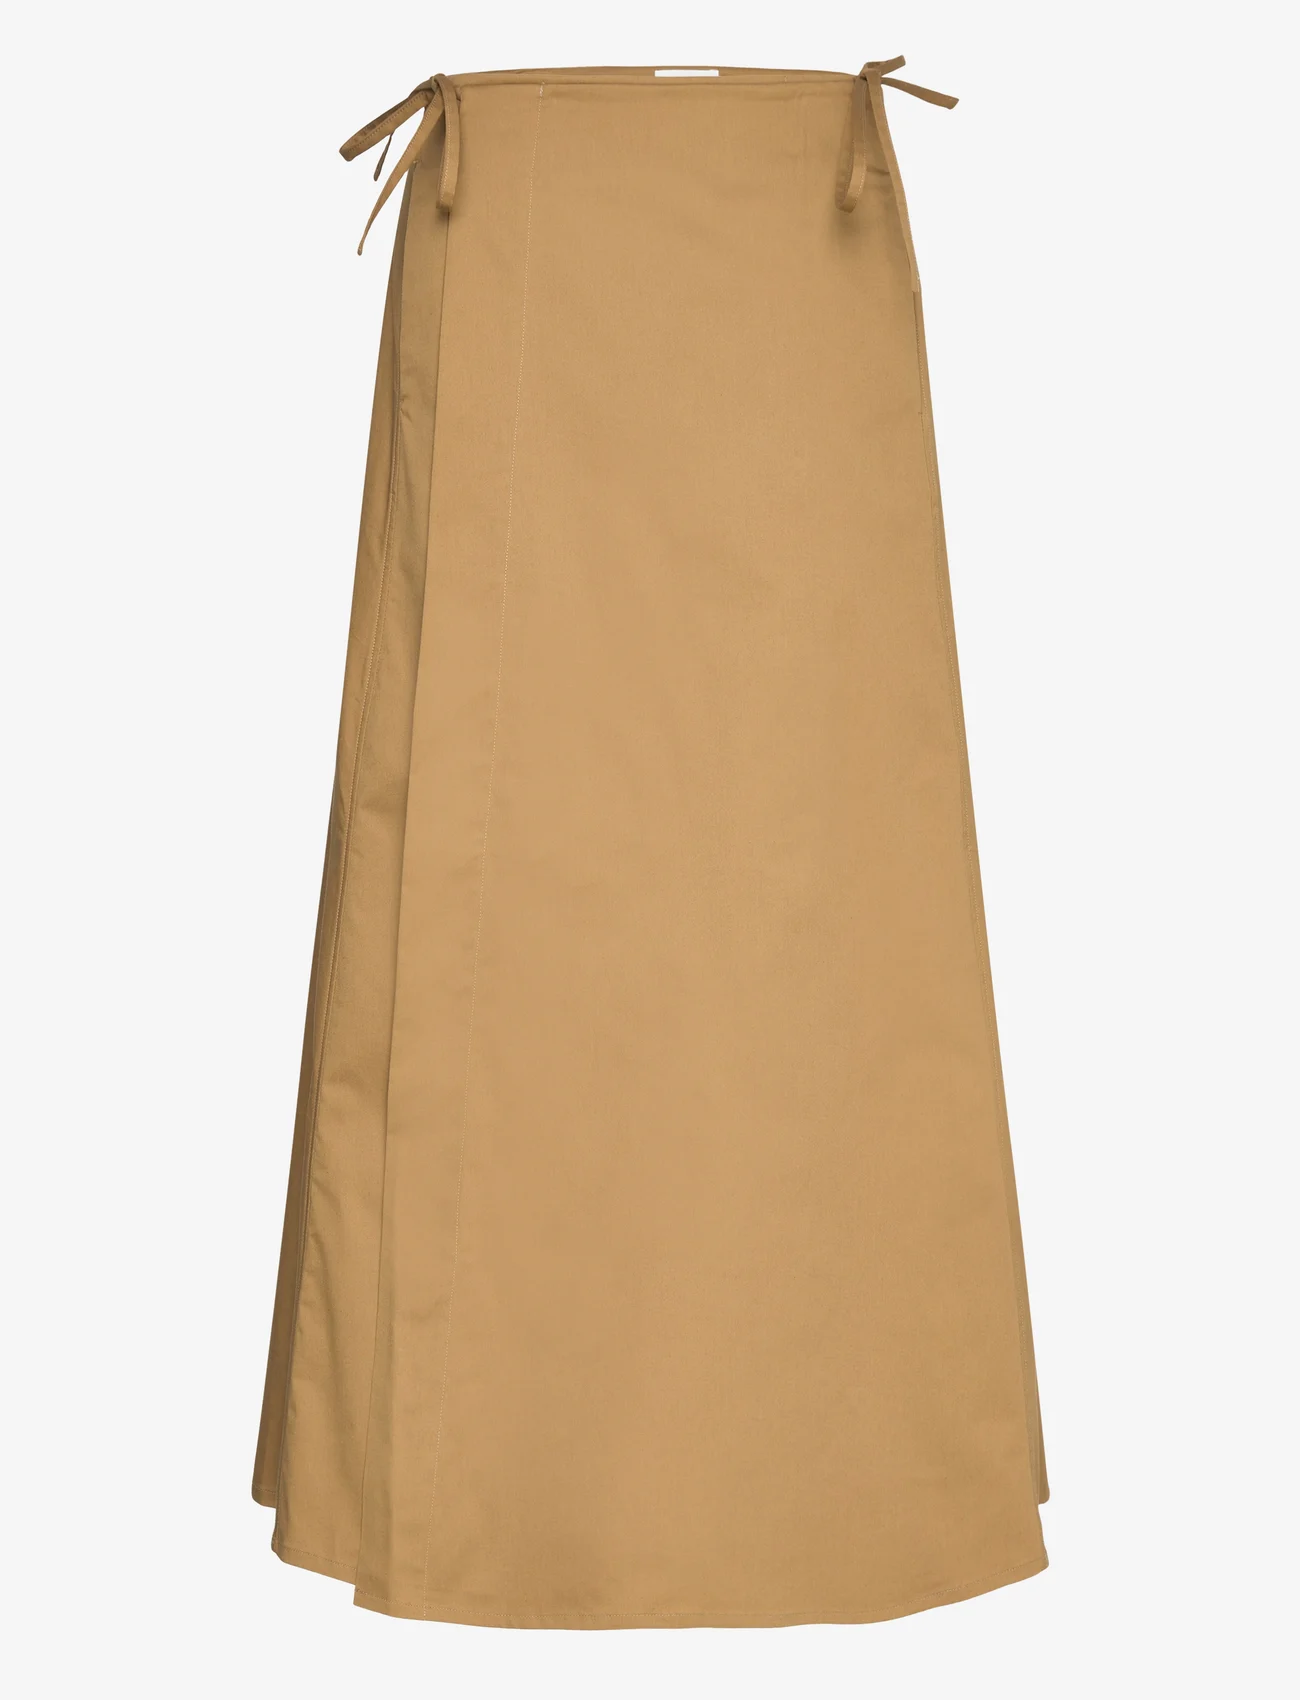 Marimekko - RAATE SOLID - wrap skirts - brown - 1